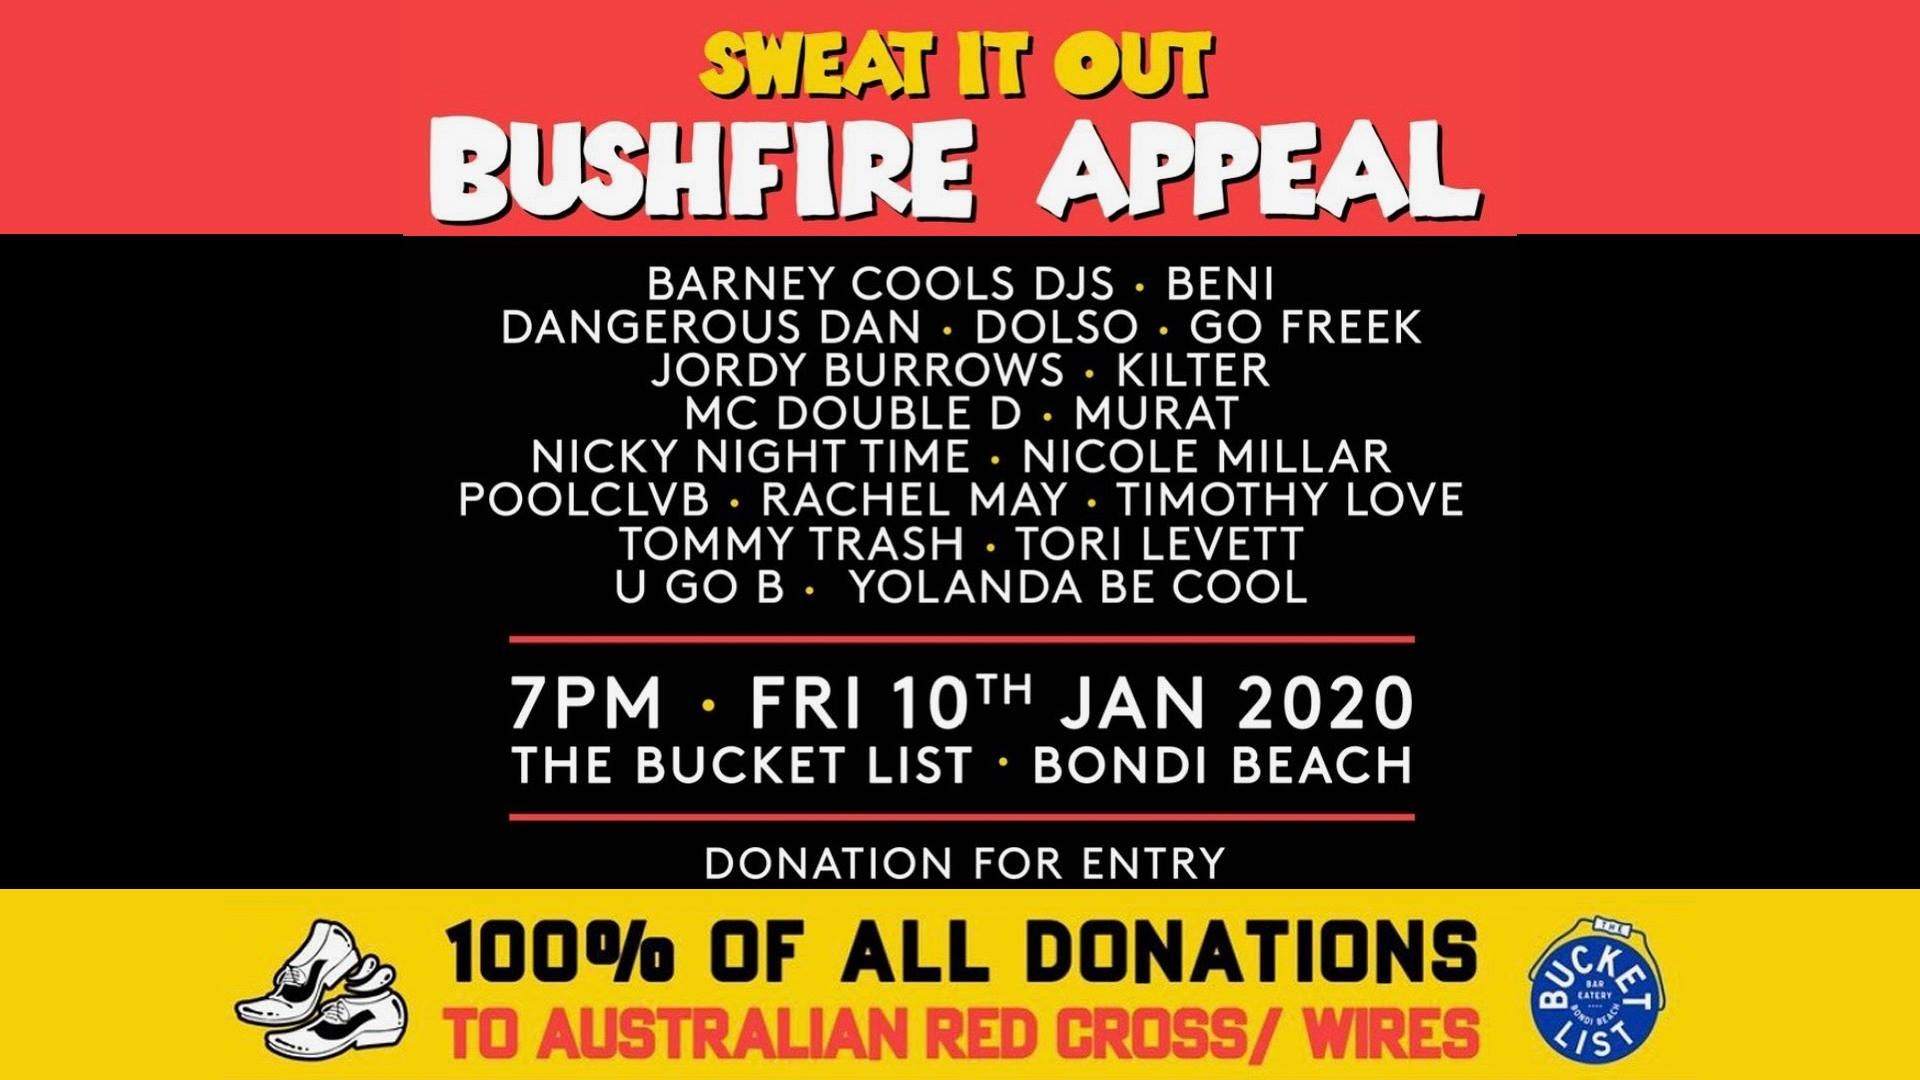 Bushfire appeal. Sweat it out x The Bucket List - Página frontal